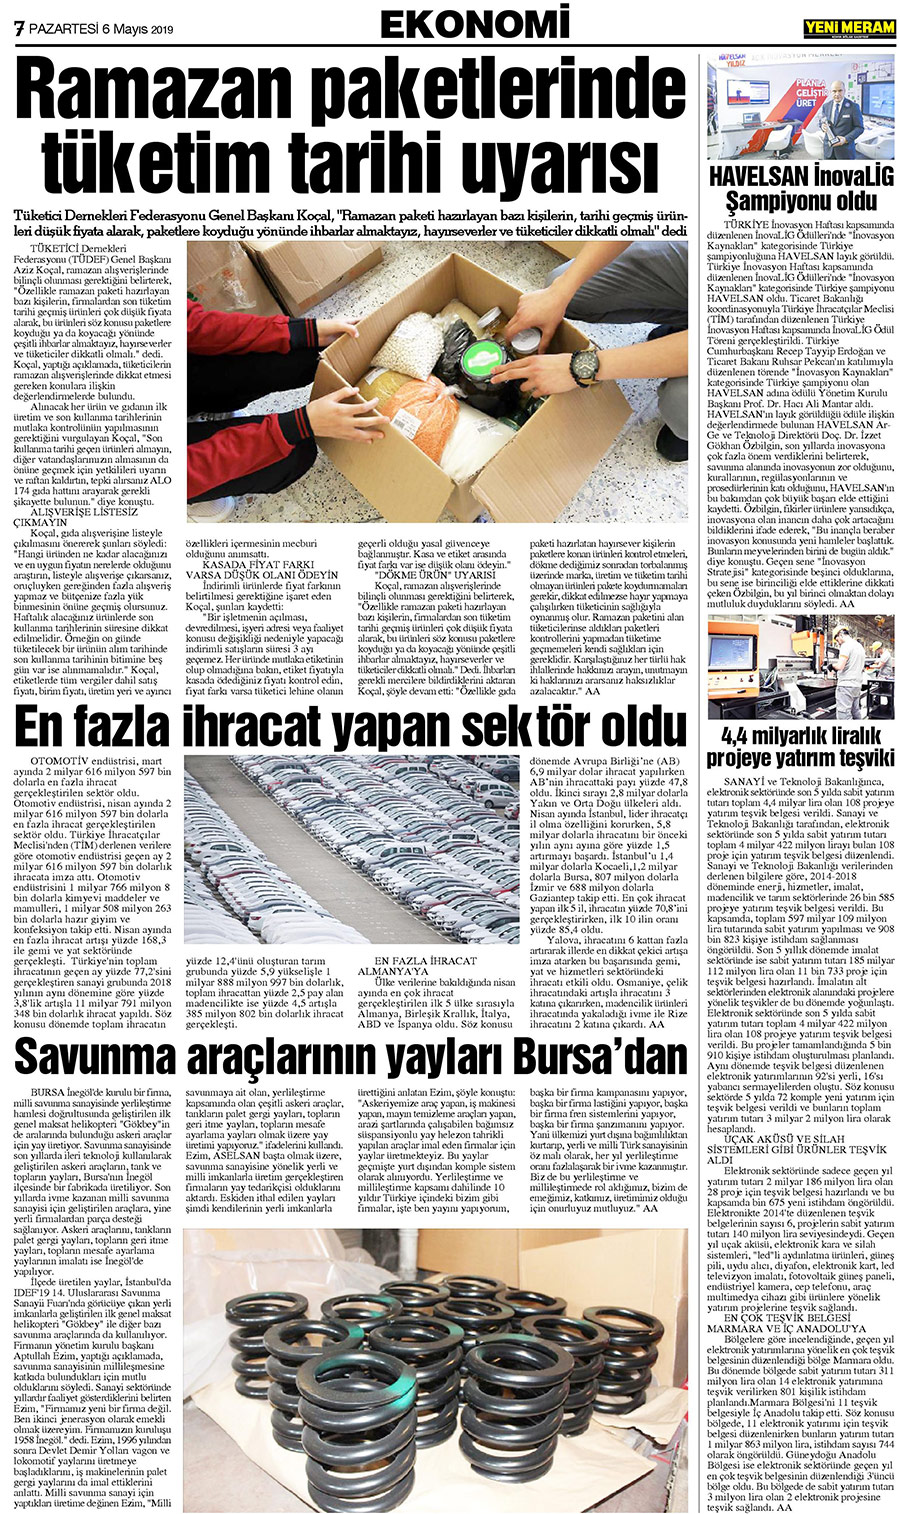 6 Mayıs 2019 Yeni Meram Gazetesi